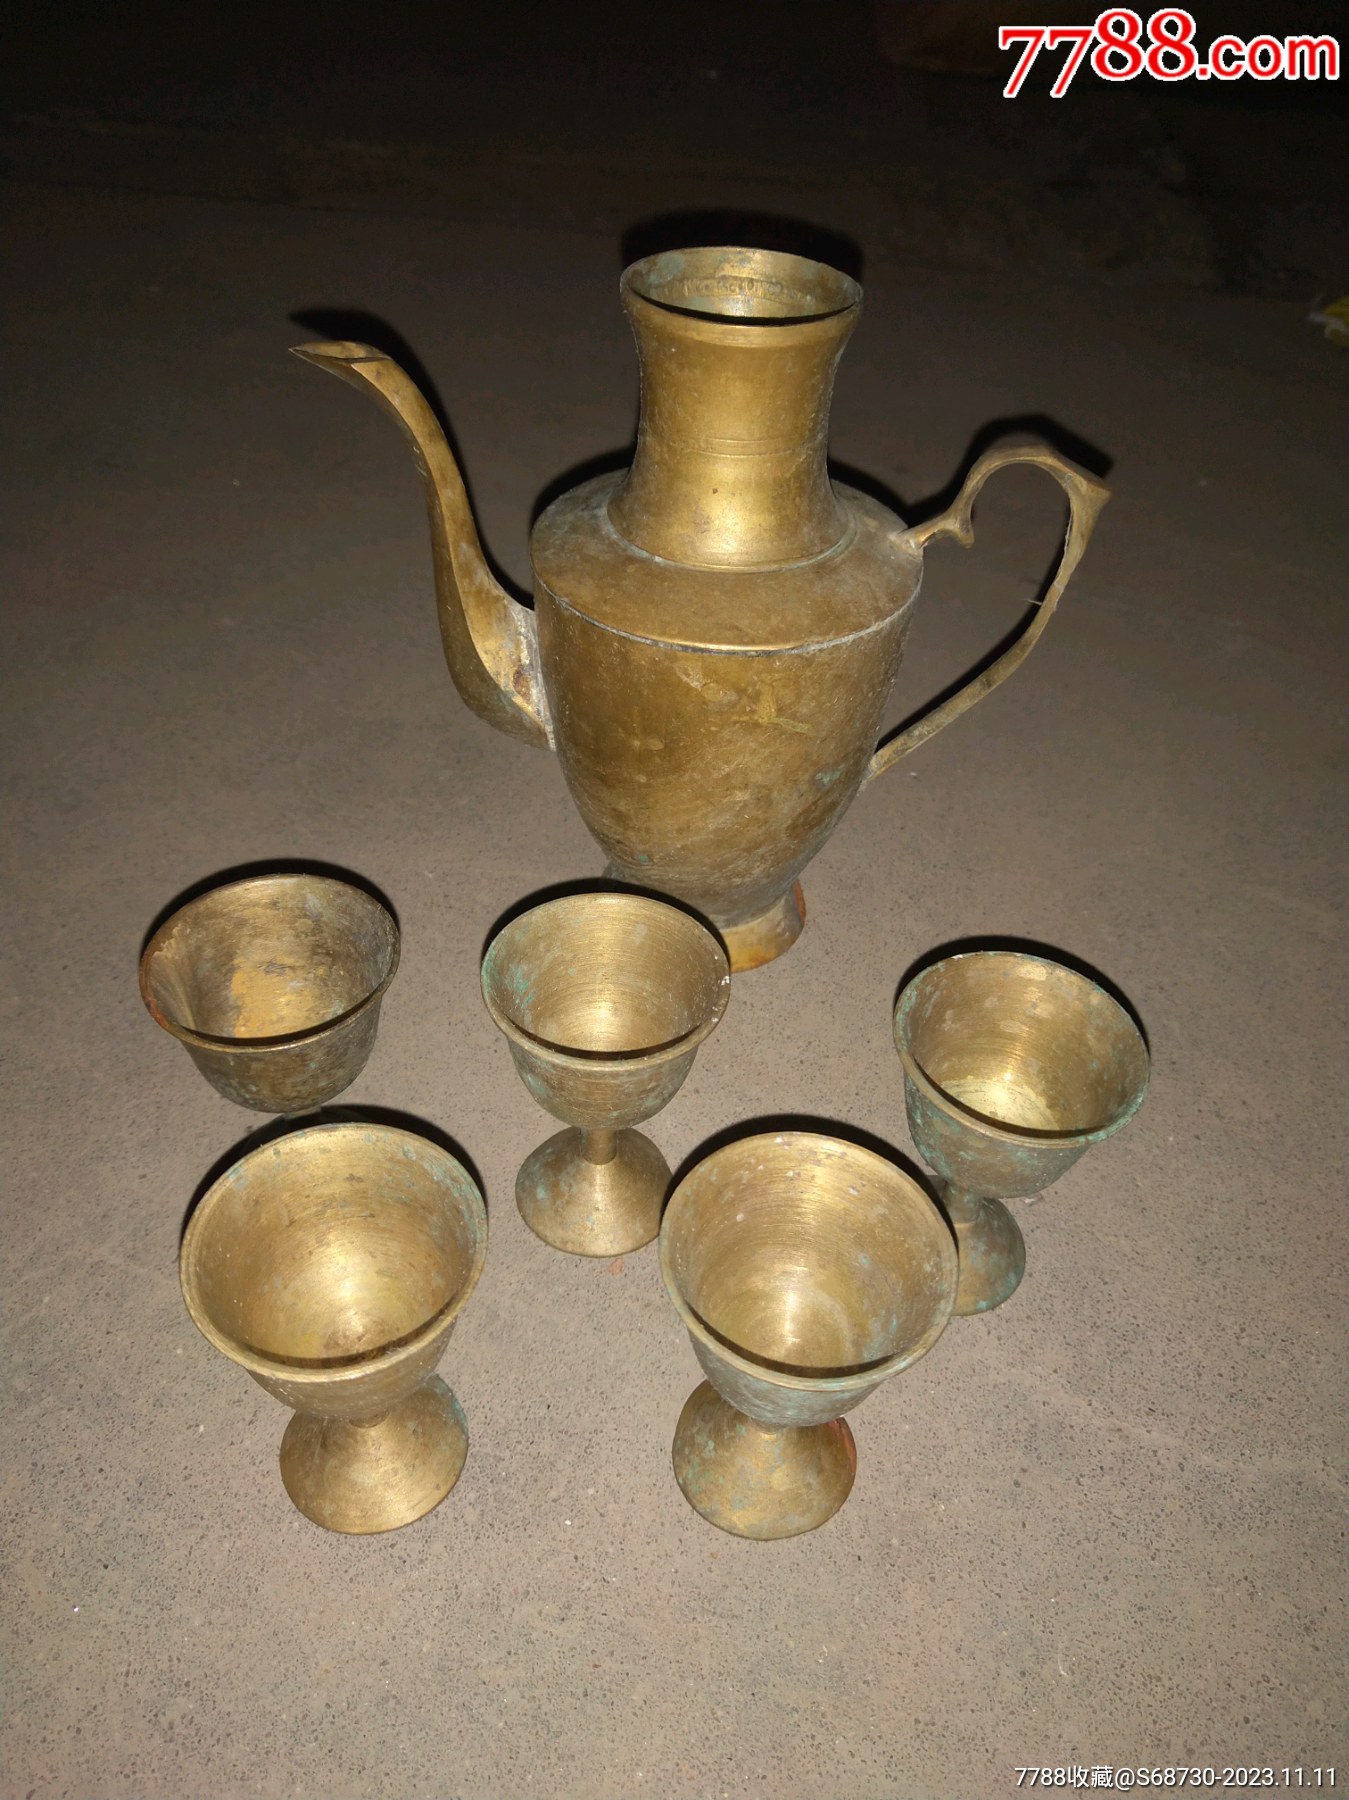 古董铜酒壶图片及价格图片